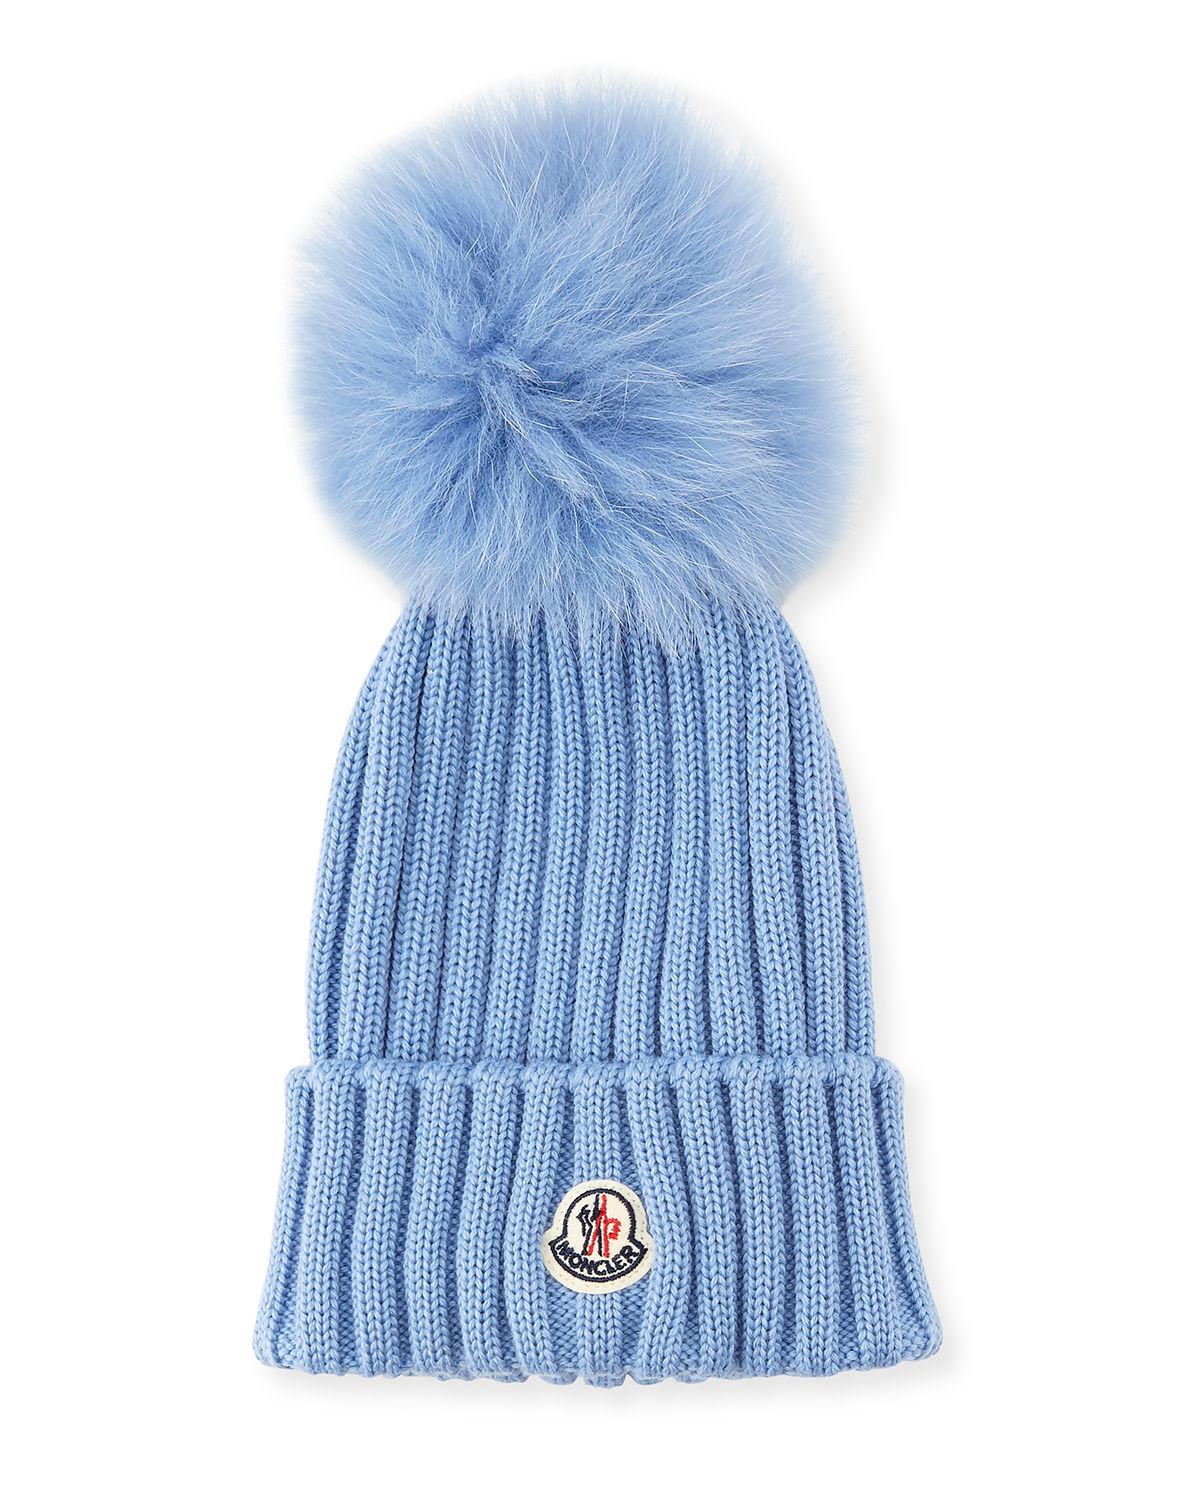 blue moncler hat